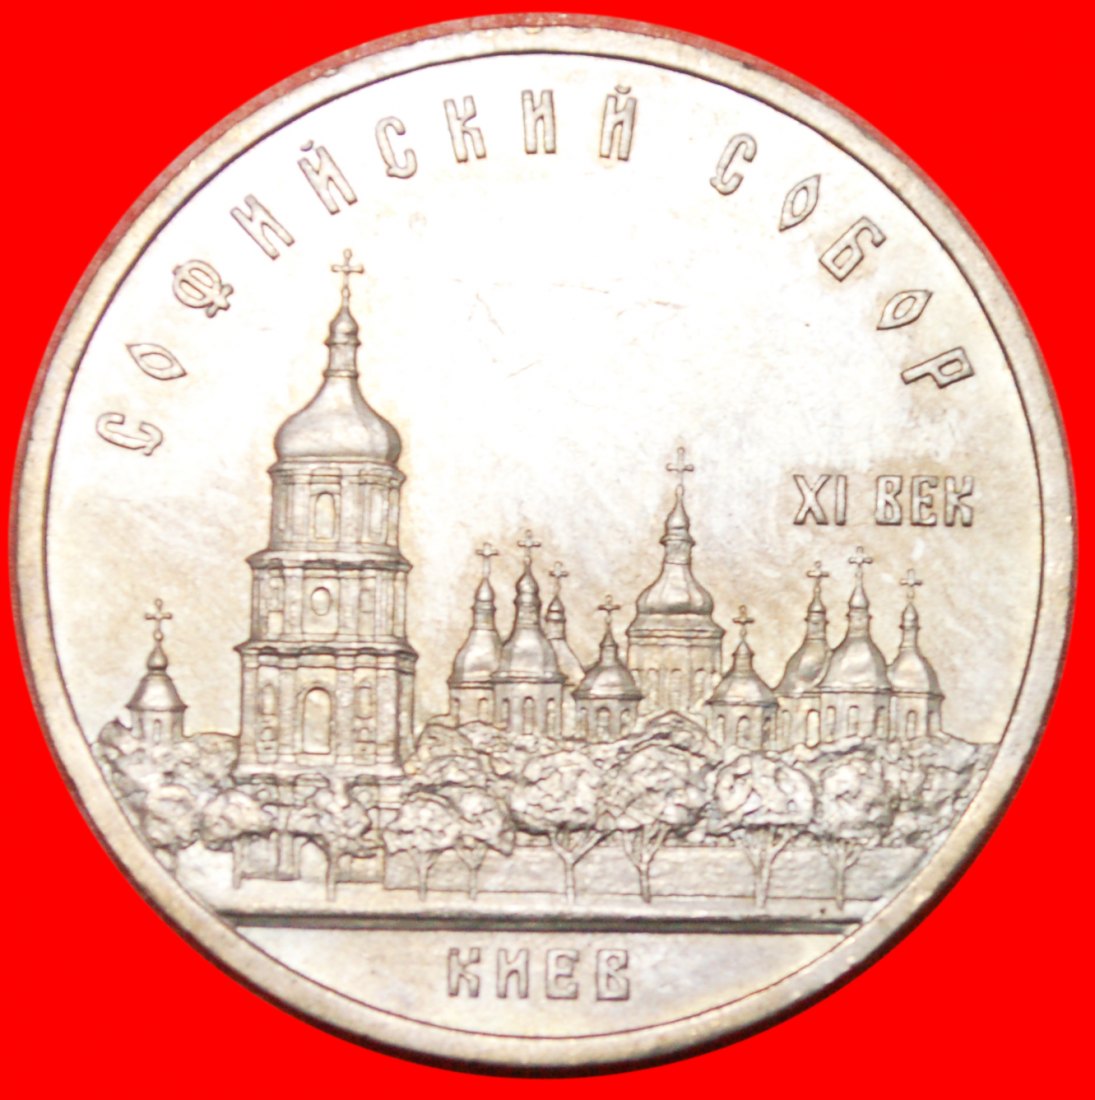  * MONOTHEISMUS - 1000 JAHRE★UdSSR (früher die russland) ★ 5 RUBEL 1988 UKRAINE STG★OHNE VORBEHALT!   